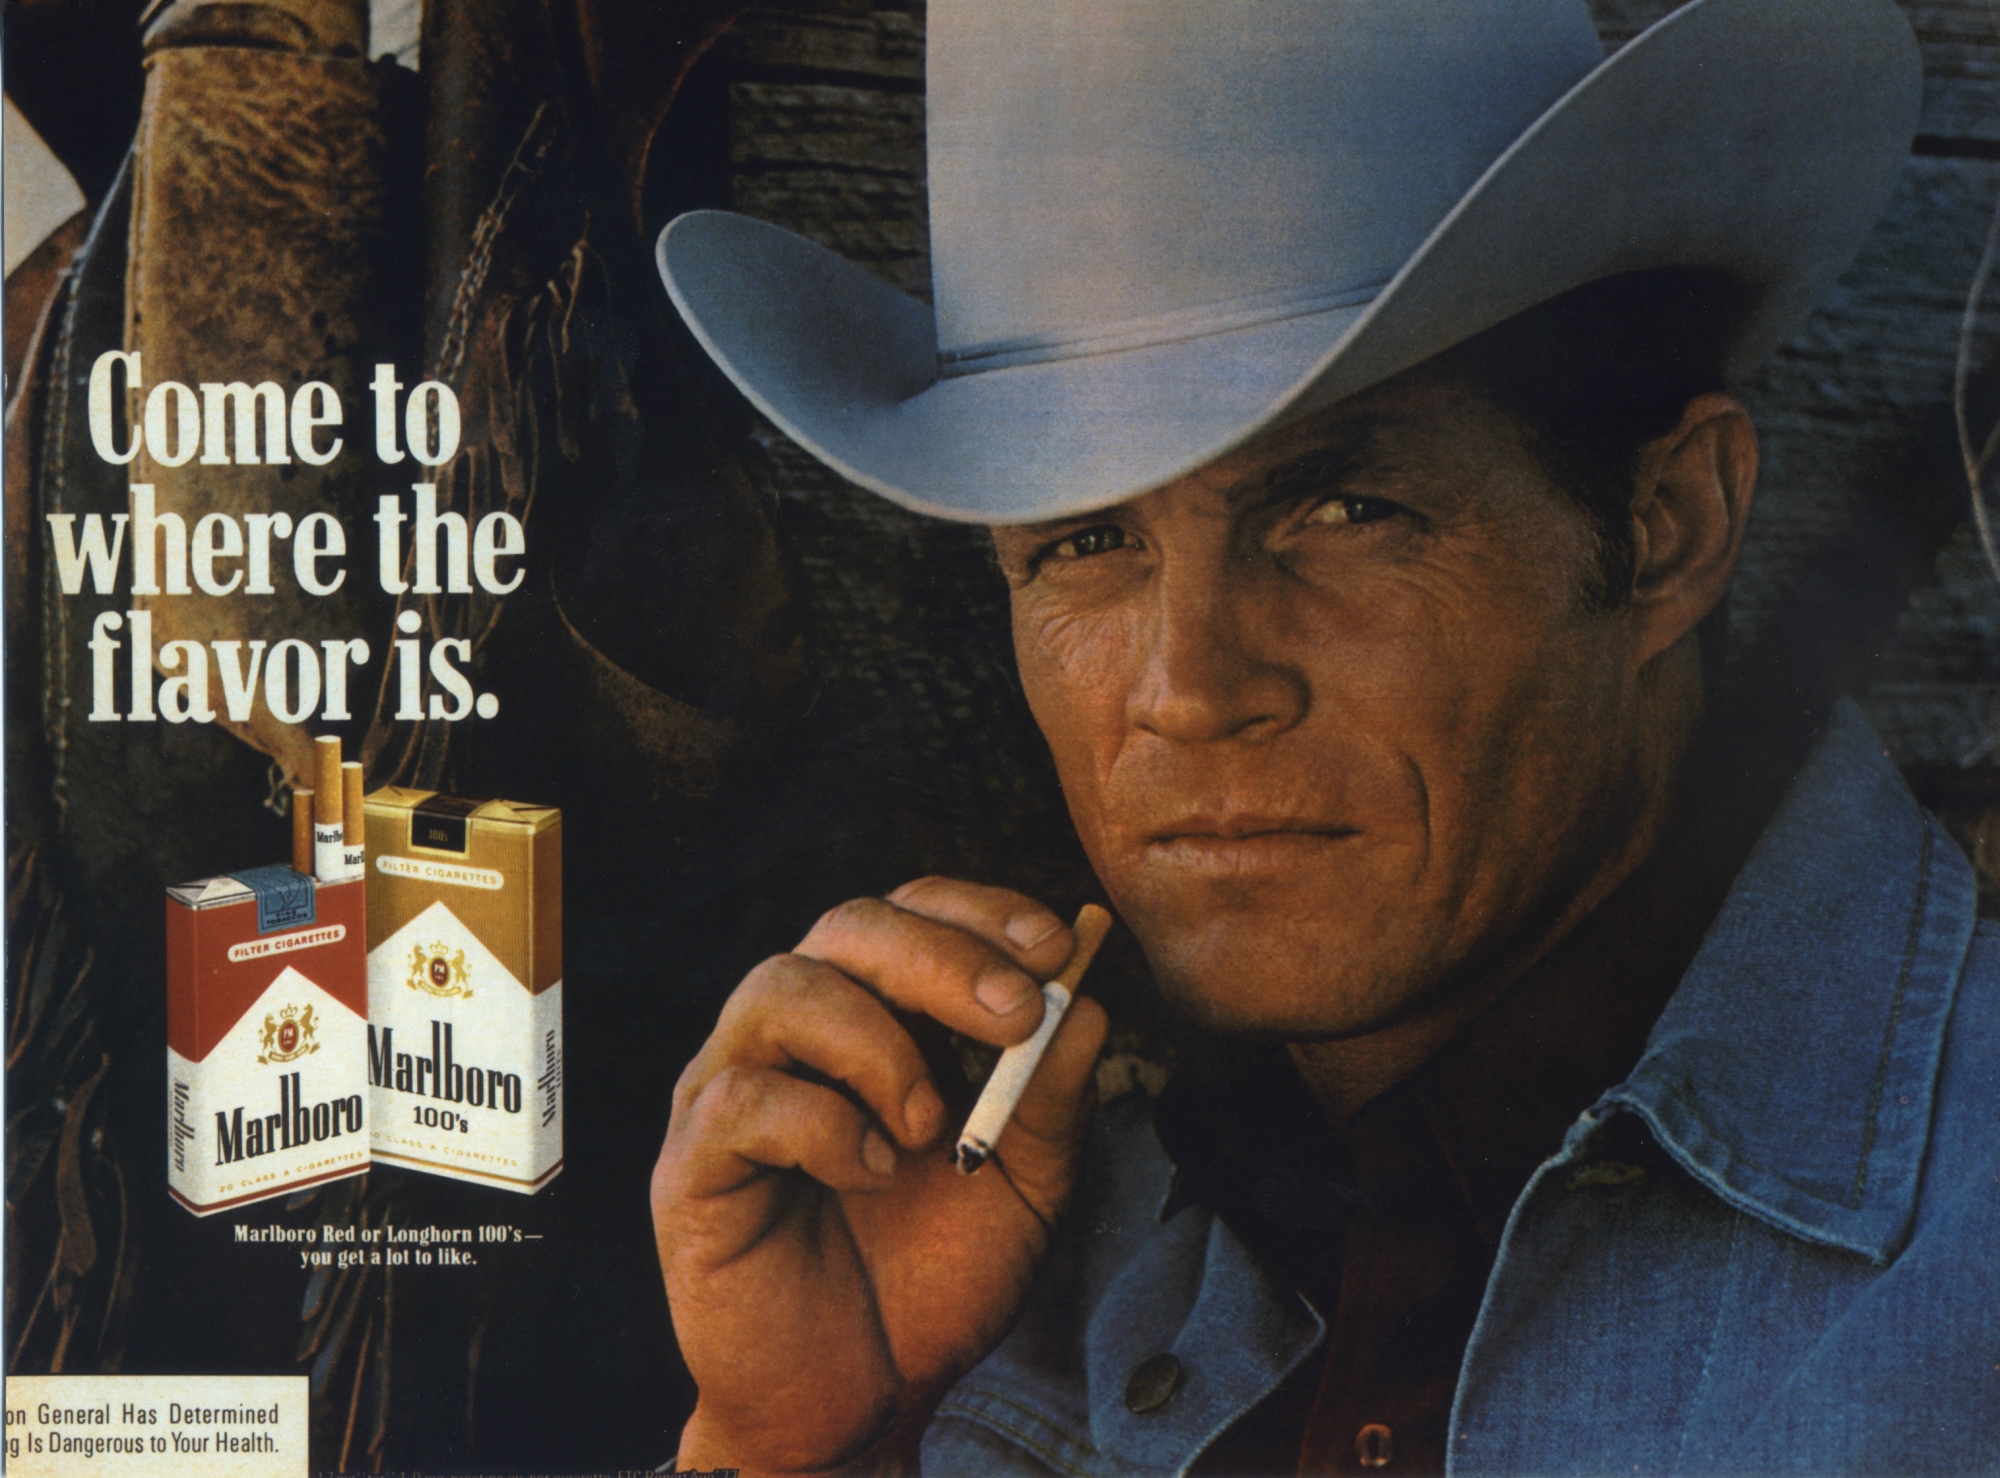 Eric Lawson, l’homme des publicités de Marlboro de la fin des années 1970, est décédé à 72 ans d’une maladie pulmonaire obstructive chronique. En Suisse, le tabac tue 9500 personnes par année.